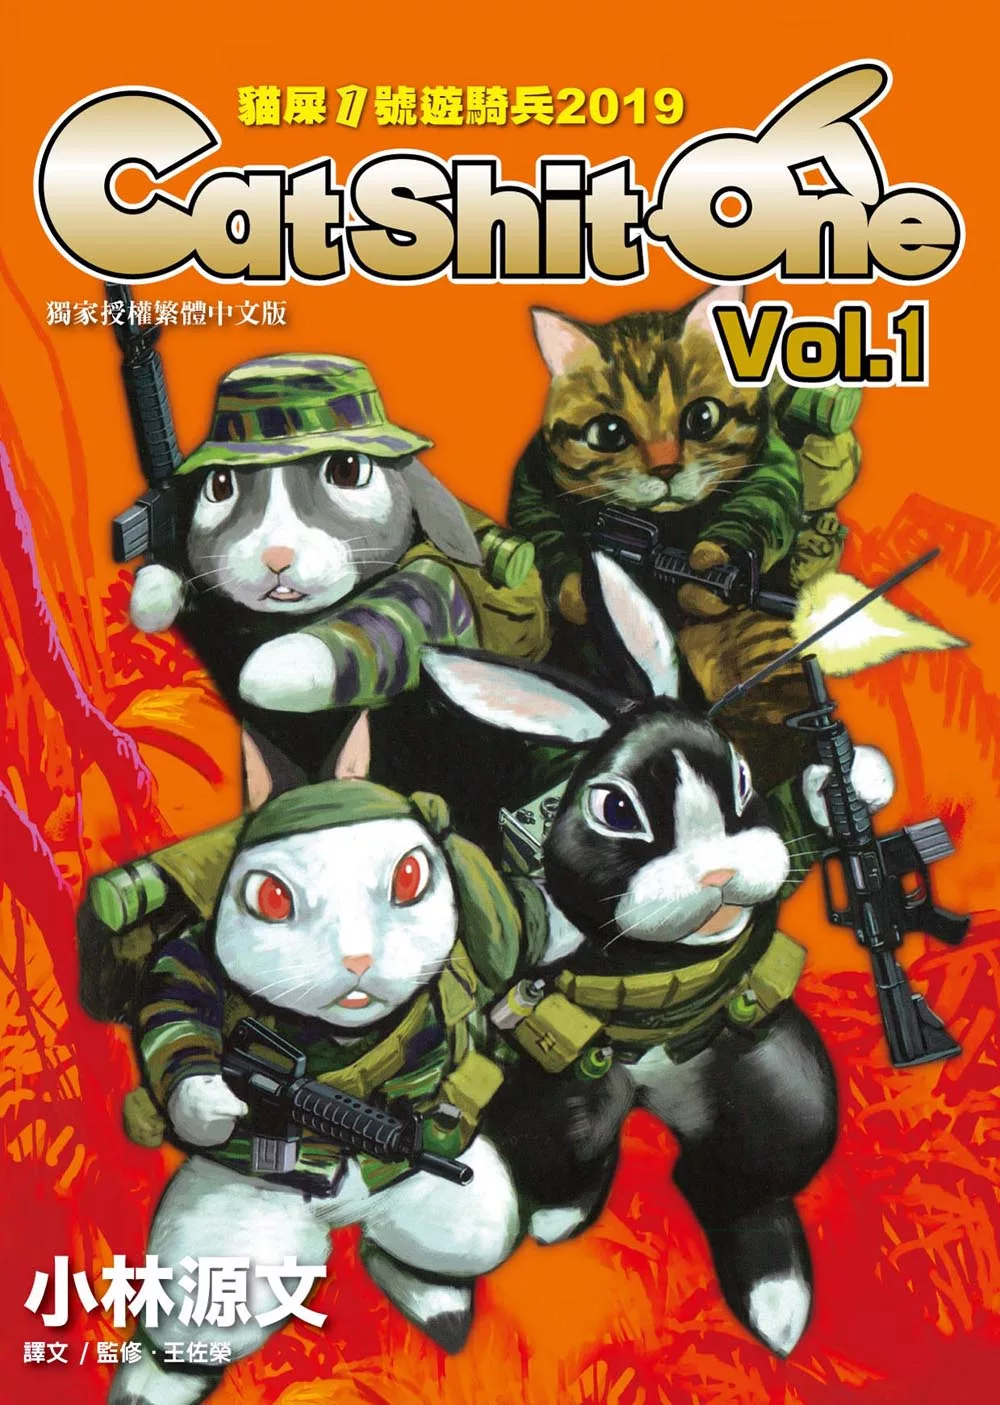 貓屎1號遊騎兵2019 Cat Shit One VOL.1 (電子書)